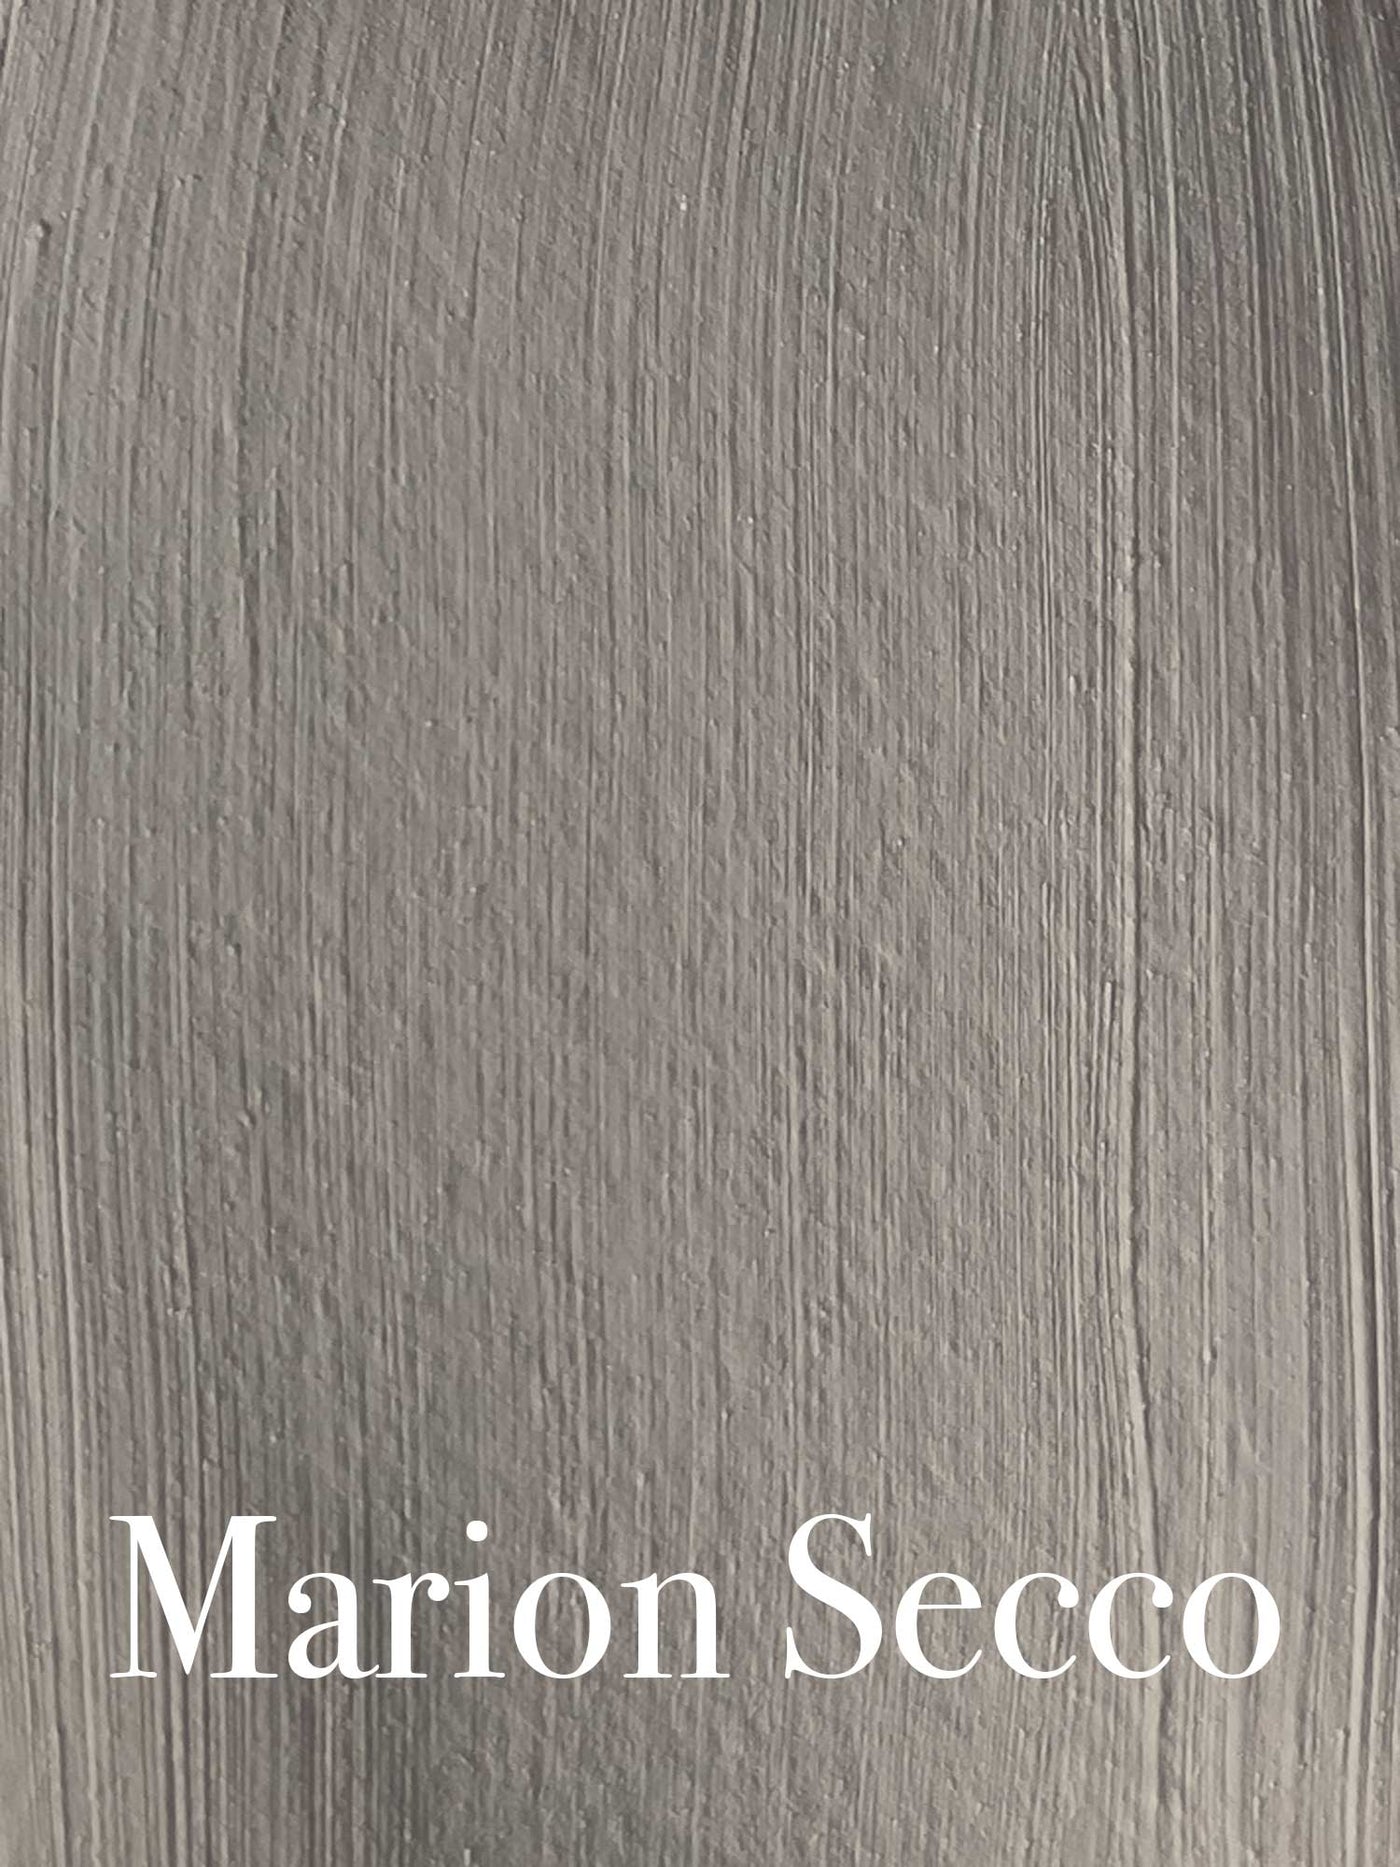 Marion Secco